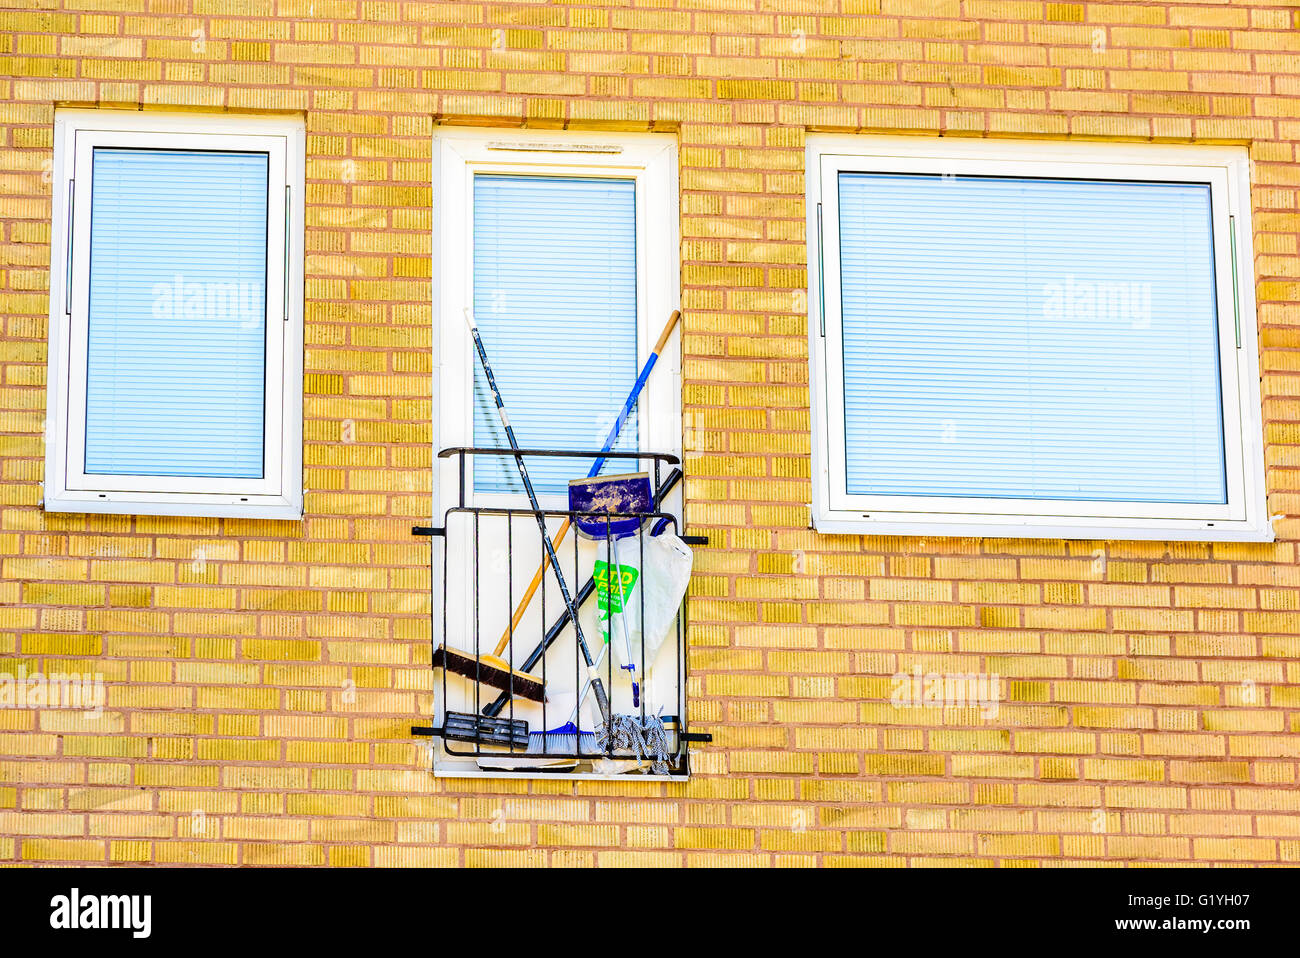 Ronneby, Schweden - 8. Mai 2016: Kleinen eingezäunten Balkon als Outdoor-Reinigung Schrank oder Lagerung verwendet. Jalousien geschlossen an Tür und wi Stockfoto